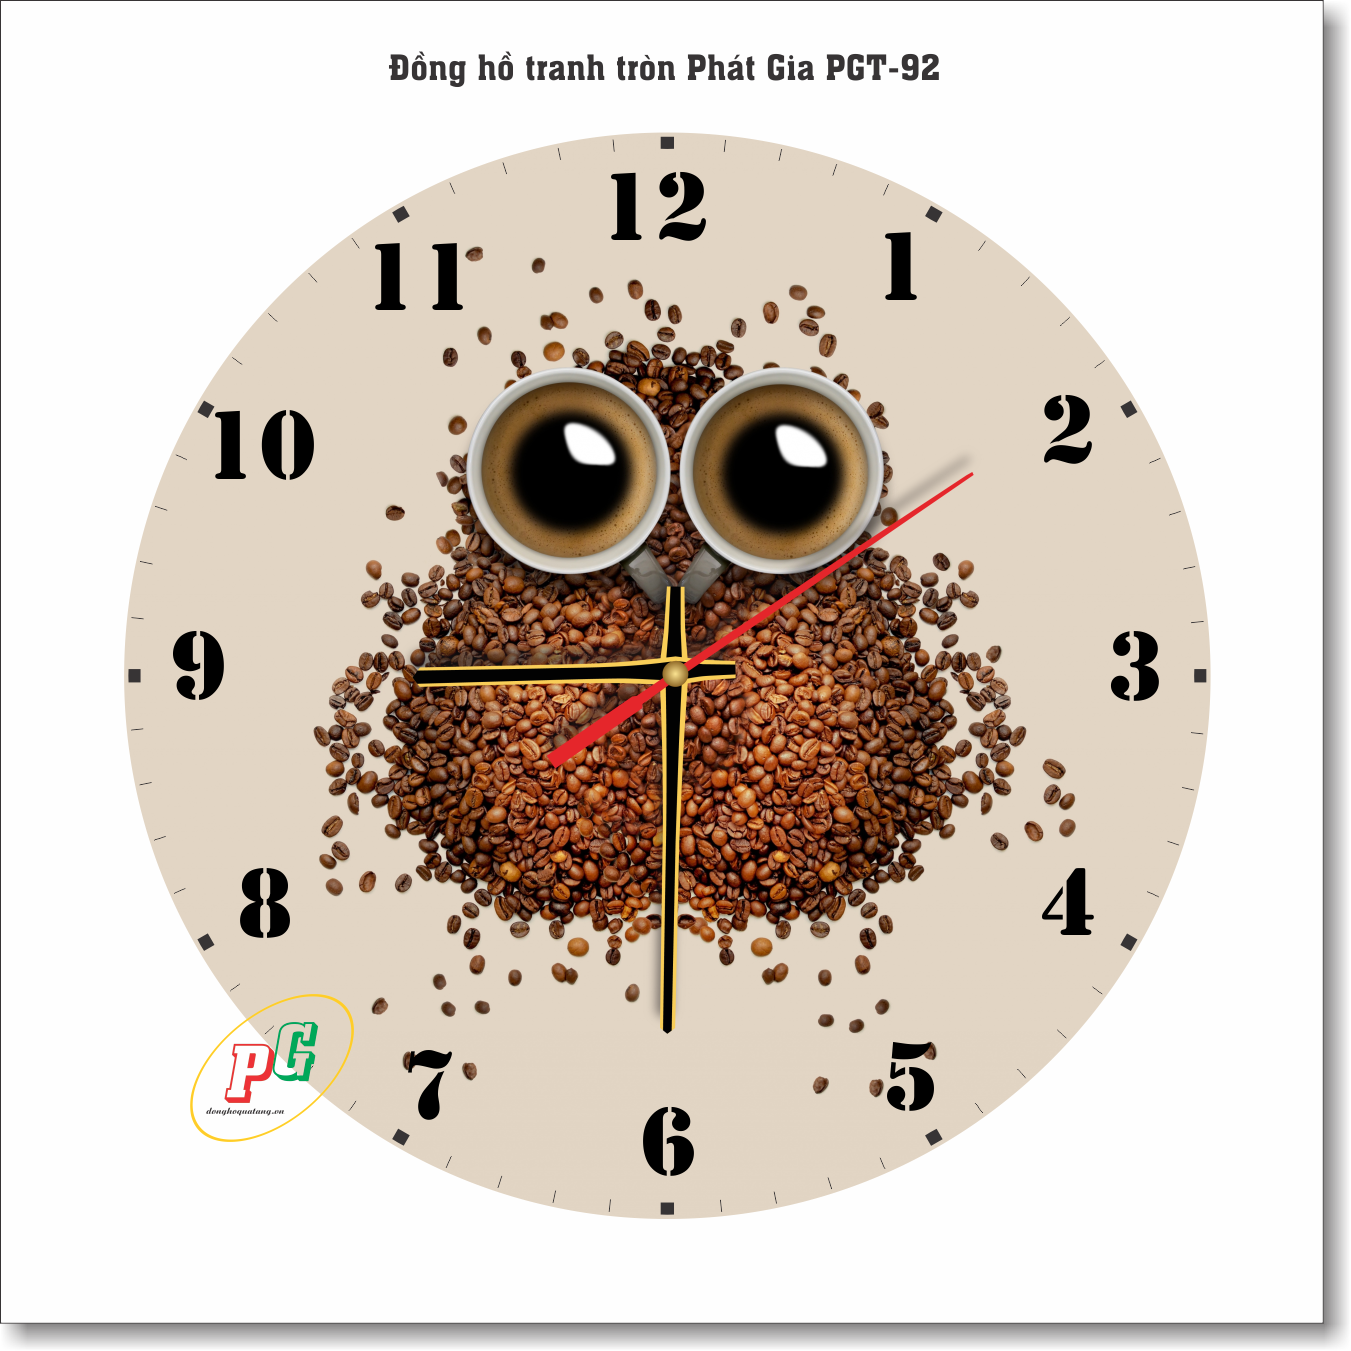 Đồng hồ treo tường, đồng hồ tranh treo tường hoạt hình cà phê, đồng hồ dạng tròn, đồng hồ độc lạ, đồng hồ treo phòng khách, phòng ngủ, nhà bếp, đồng hồ tranh quà tặng Phát Gia PGT38-92